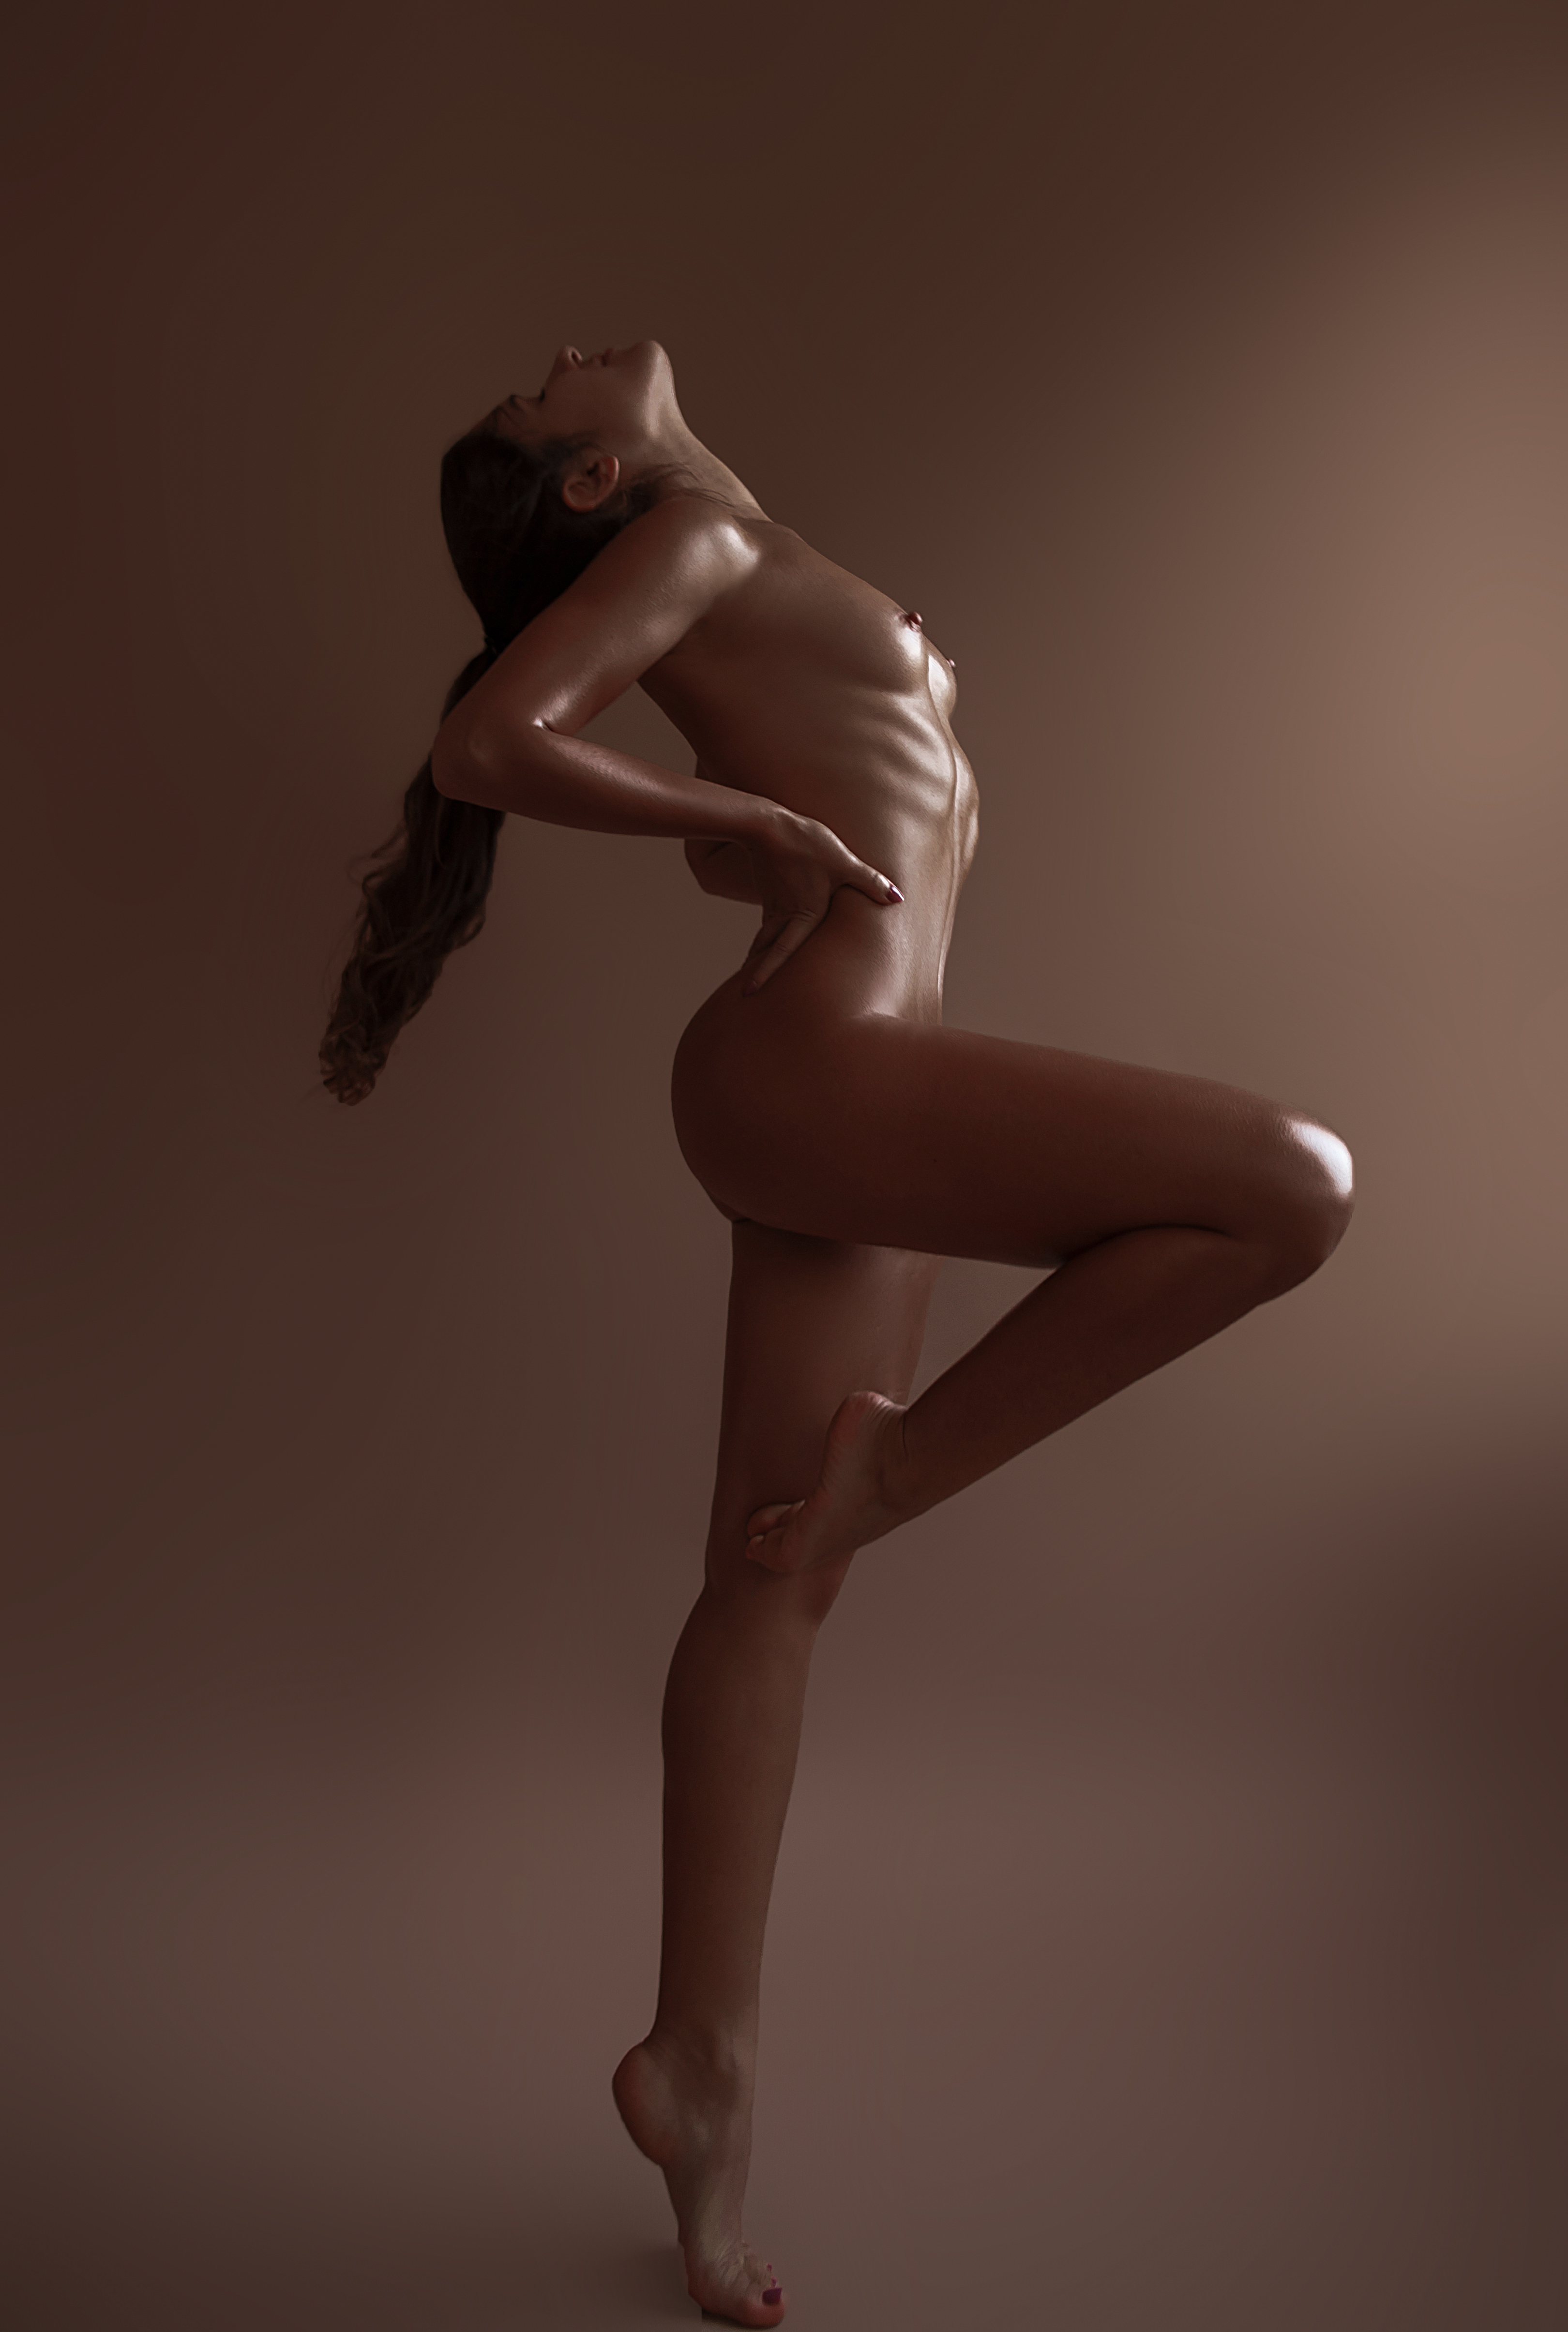 NEW PORN: Nastya Nass Nude Twerking Youtuber! 